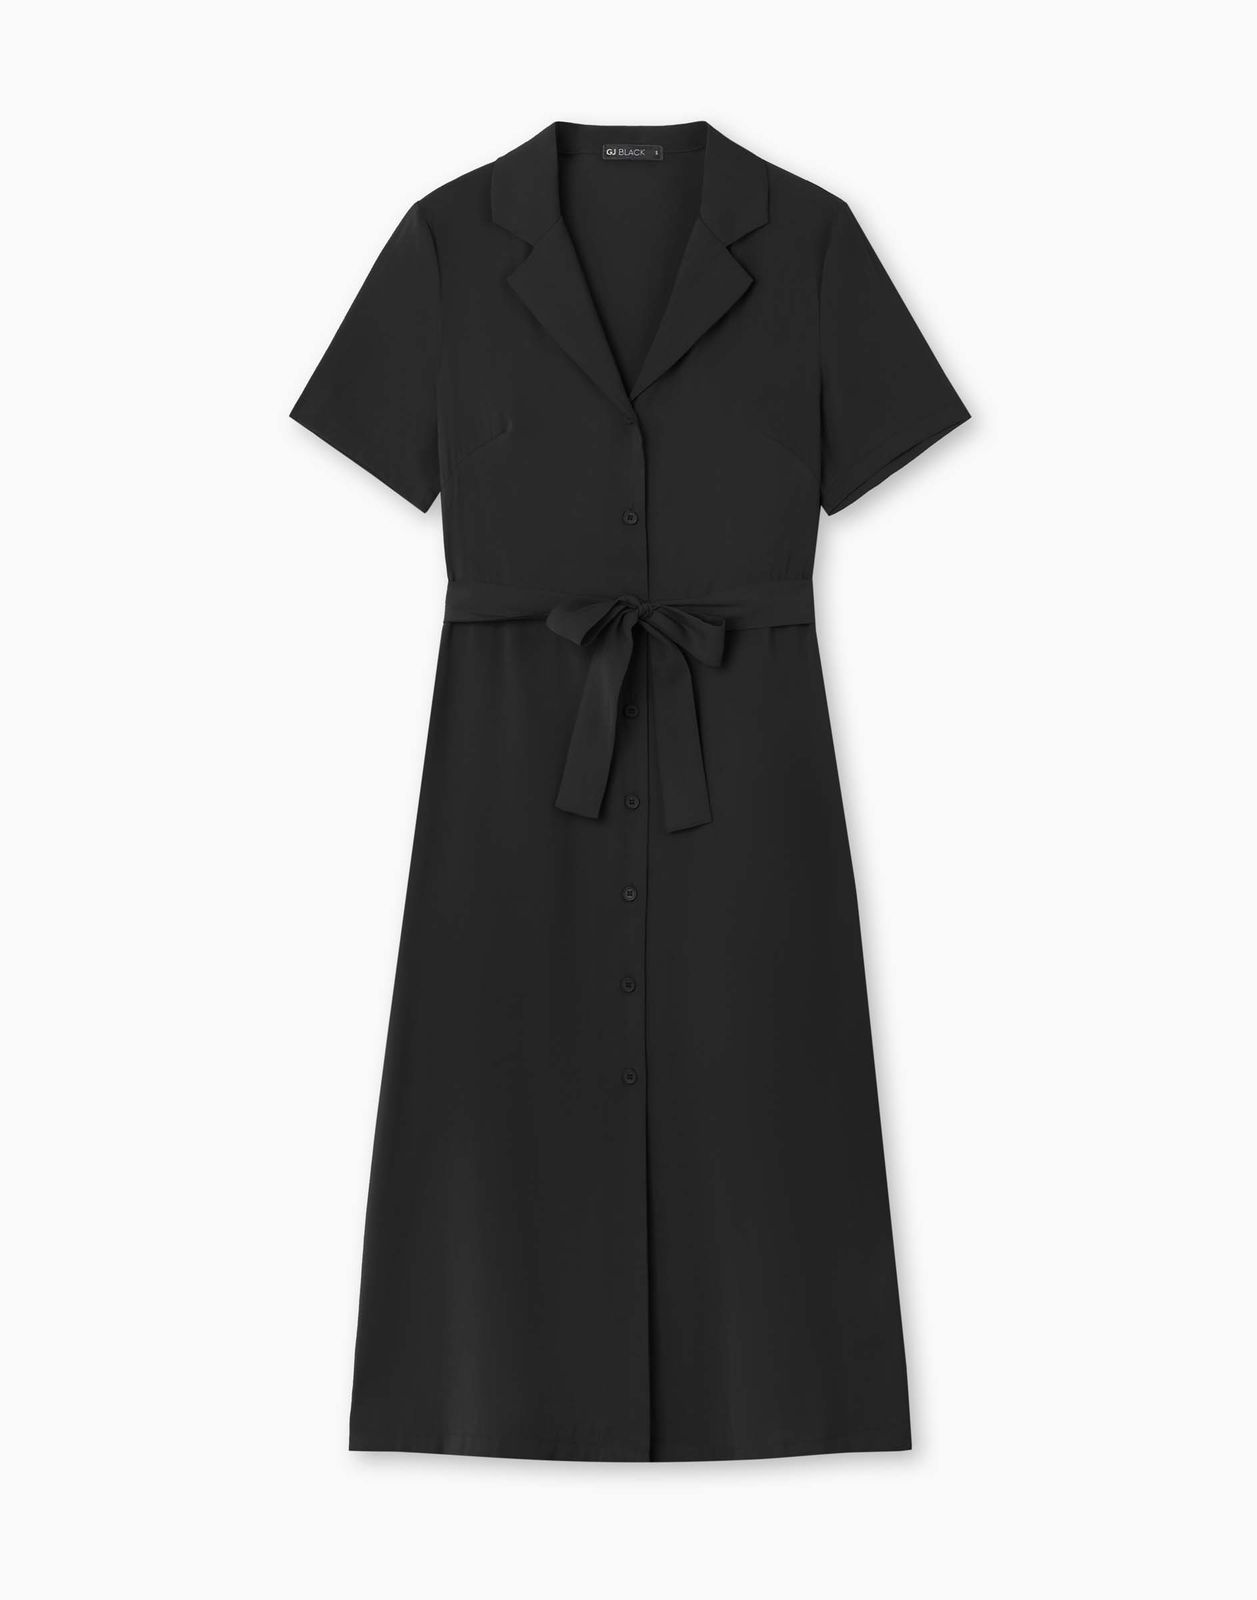 Платье женское Gloria Jeans GDR028322 черный XS/164